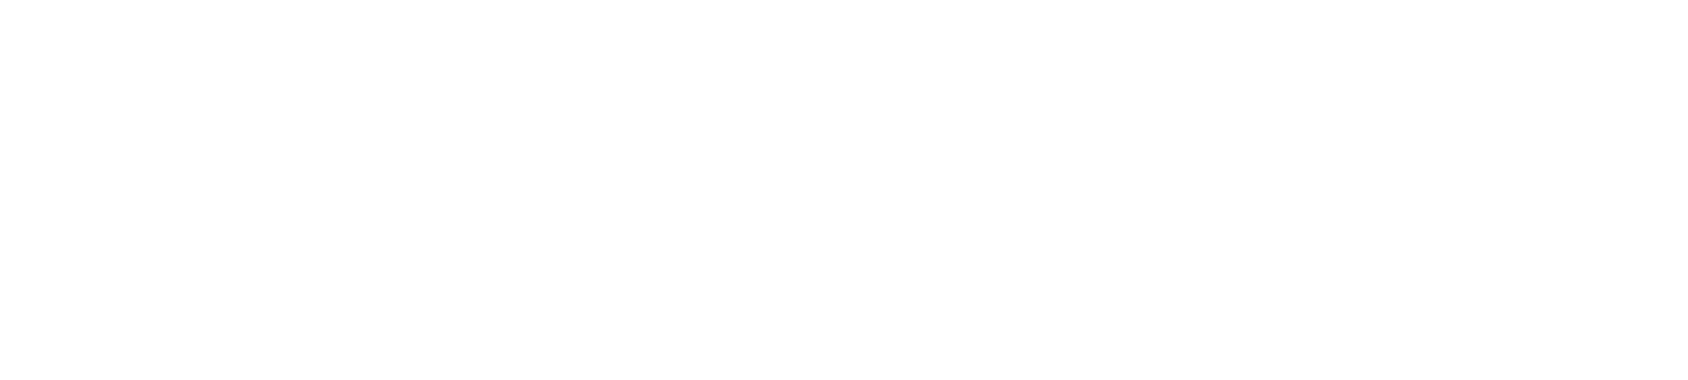 Coupang logo grand pour les fonds sombres (PNG transparent)